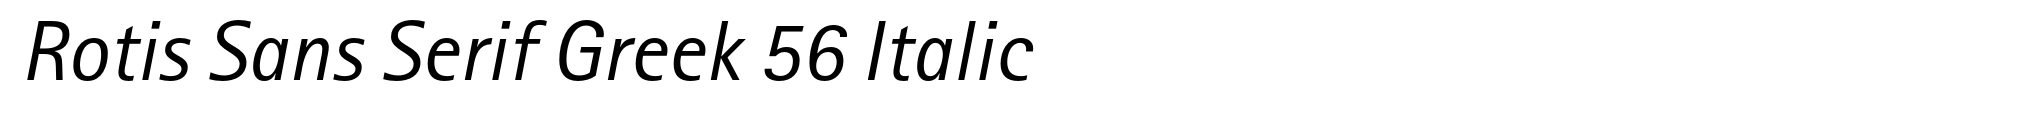 Rotis Sans Serif Greek 56 Italic image